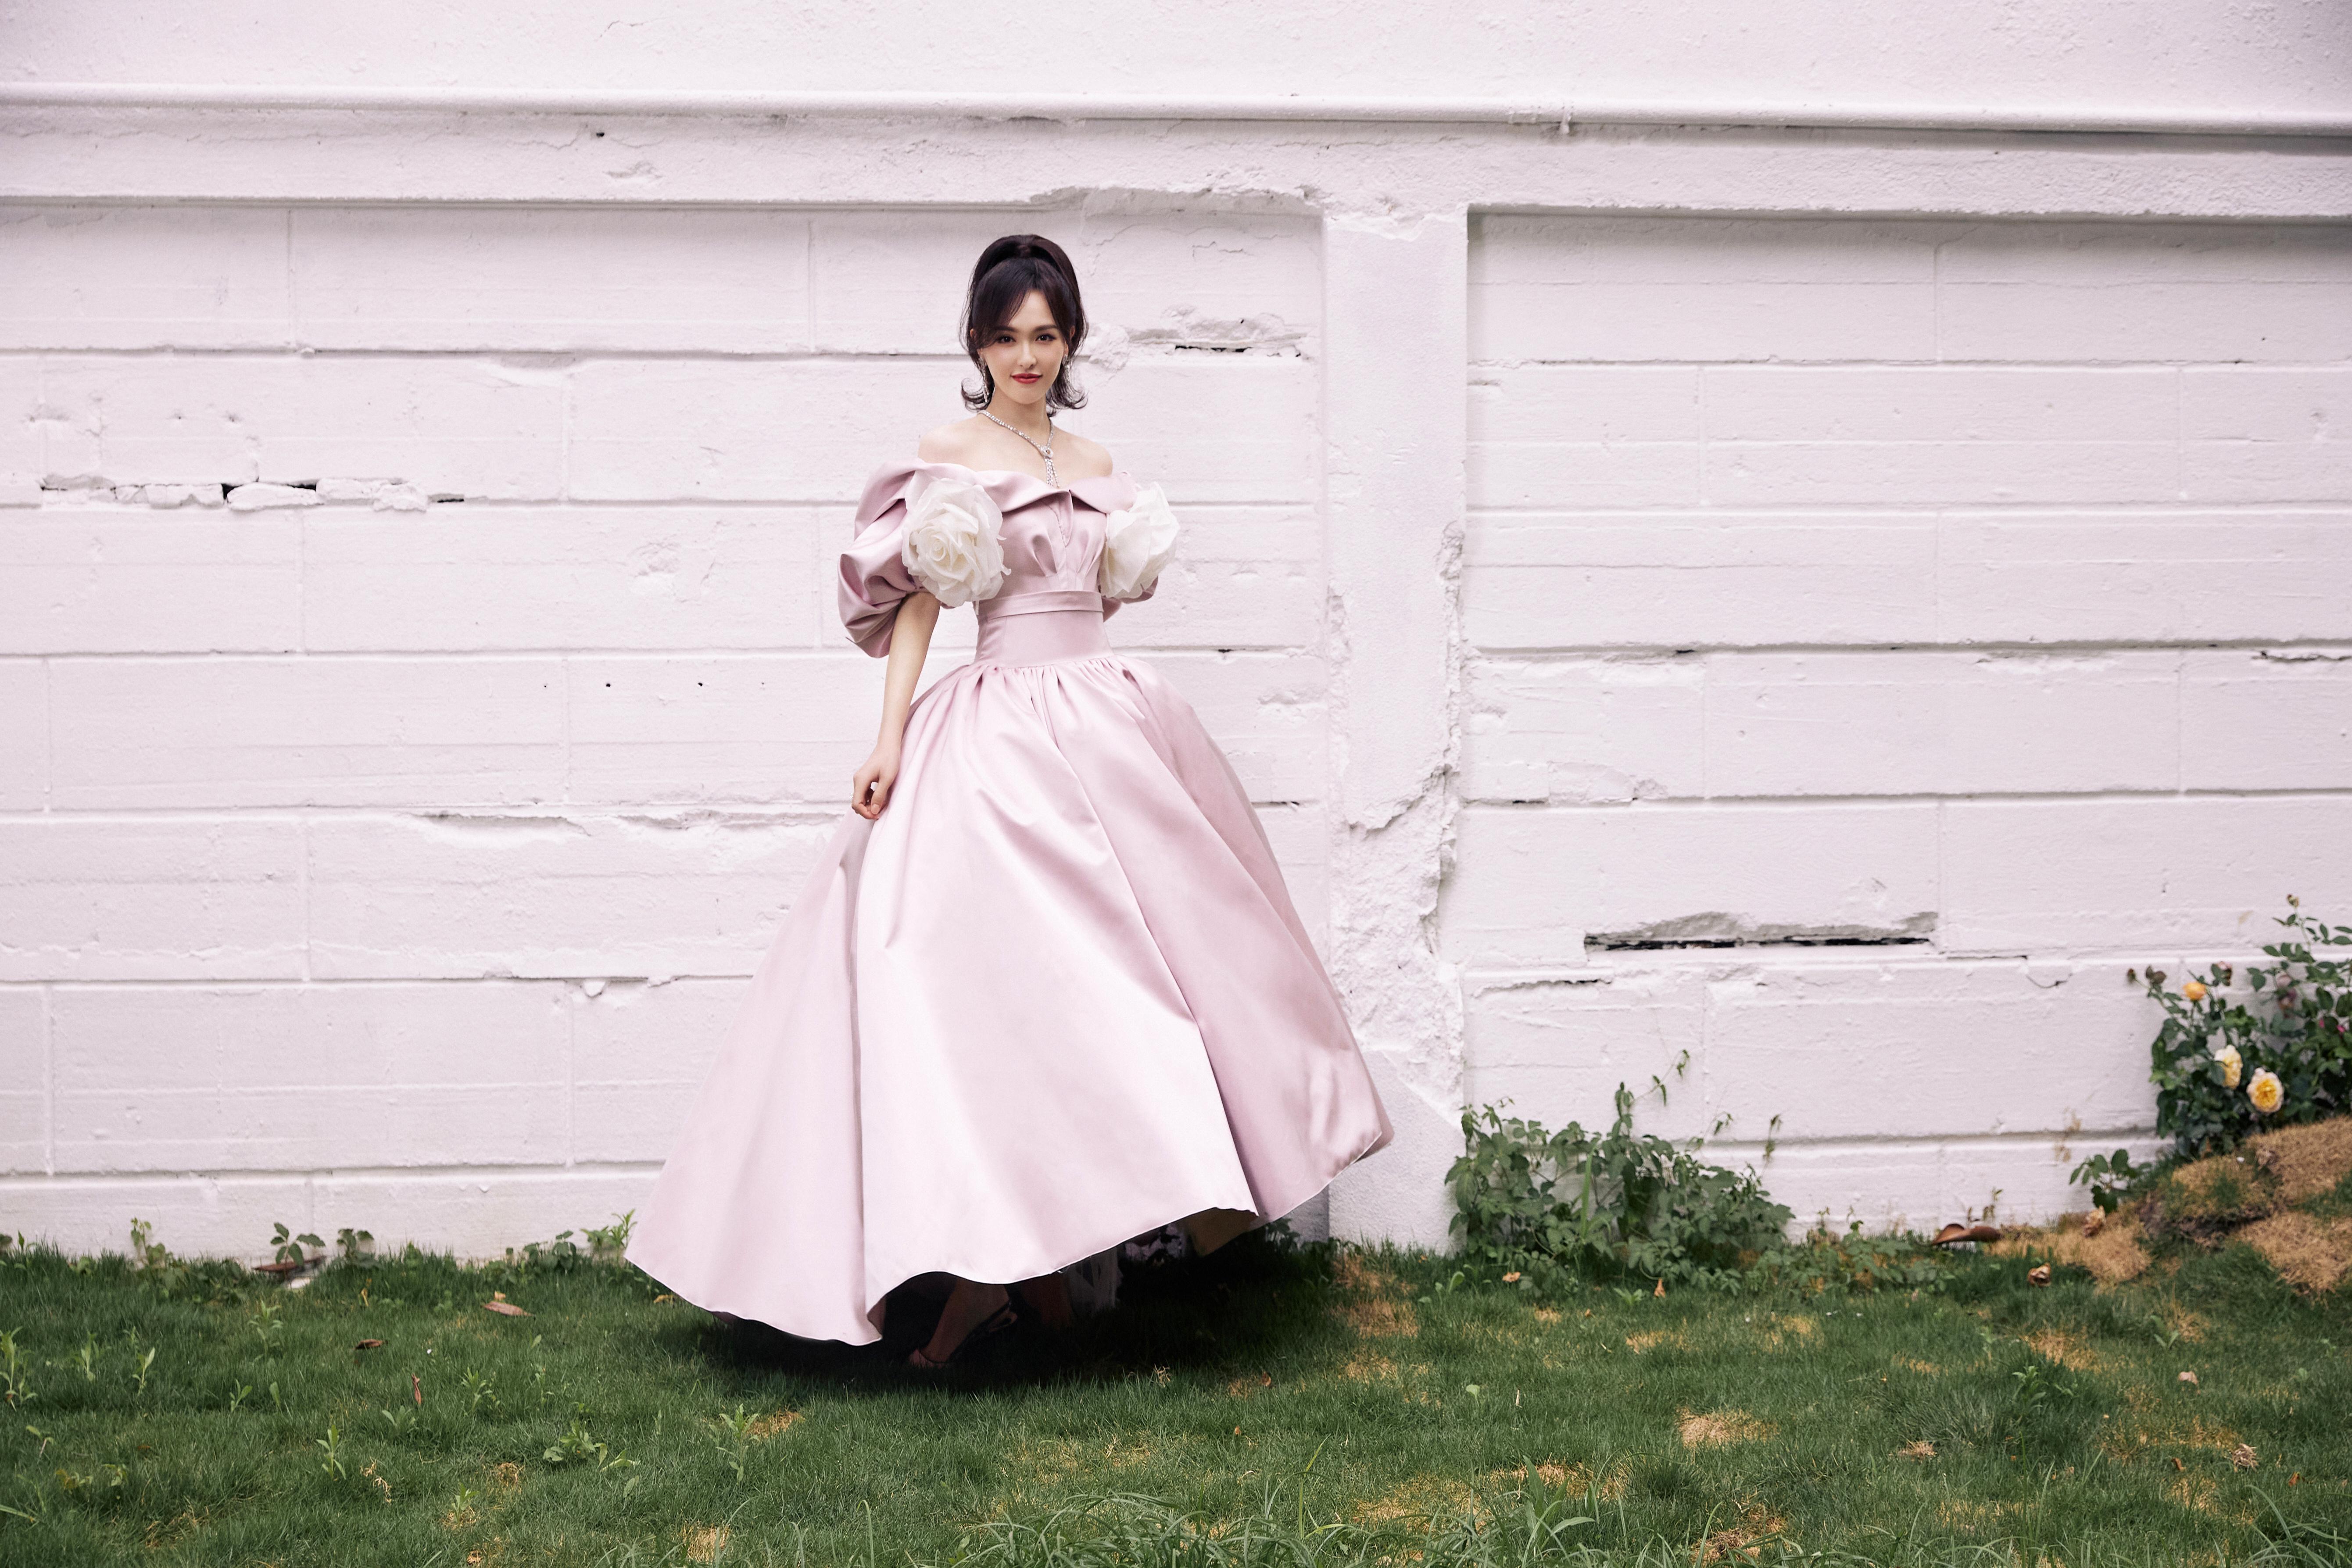 唐嫣粉色束腰裙造型复古优雅 白色大花朵点缀温柔甜美,1 (5)